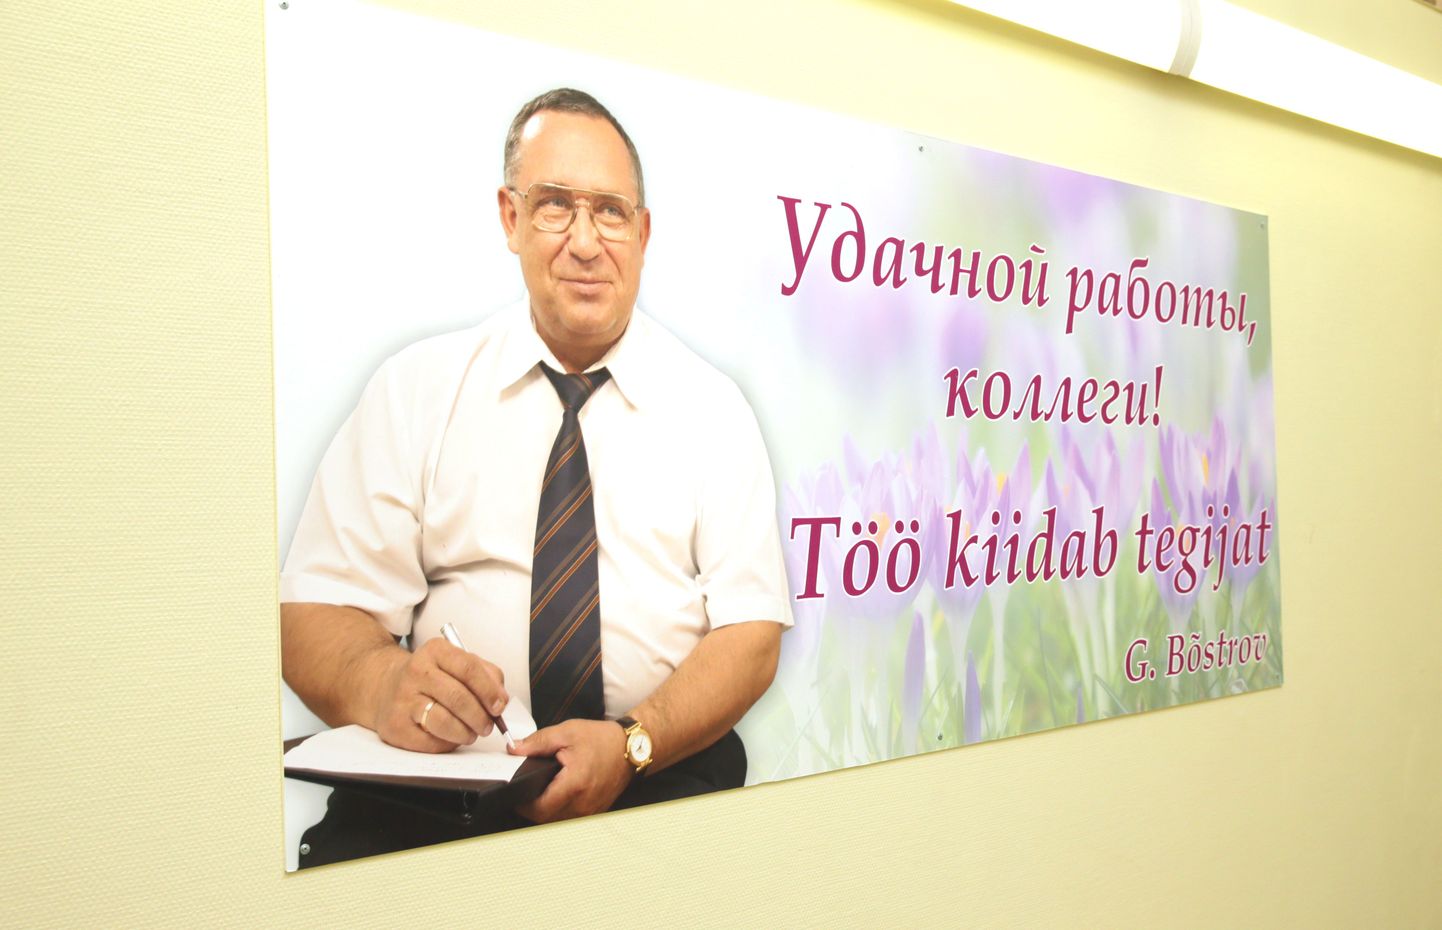 Этот плакат приветствует посетителей здания, где в Маарду соседствуют мэрия и горсобрание.